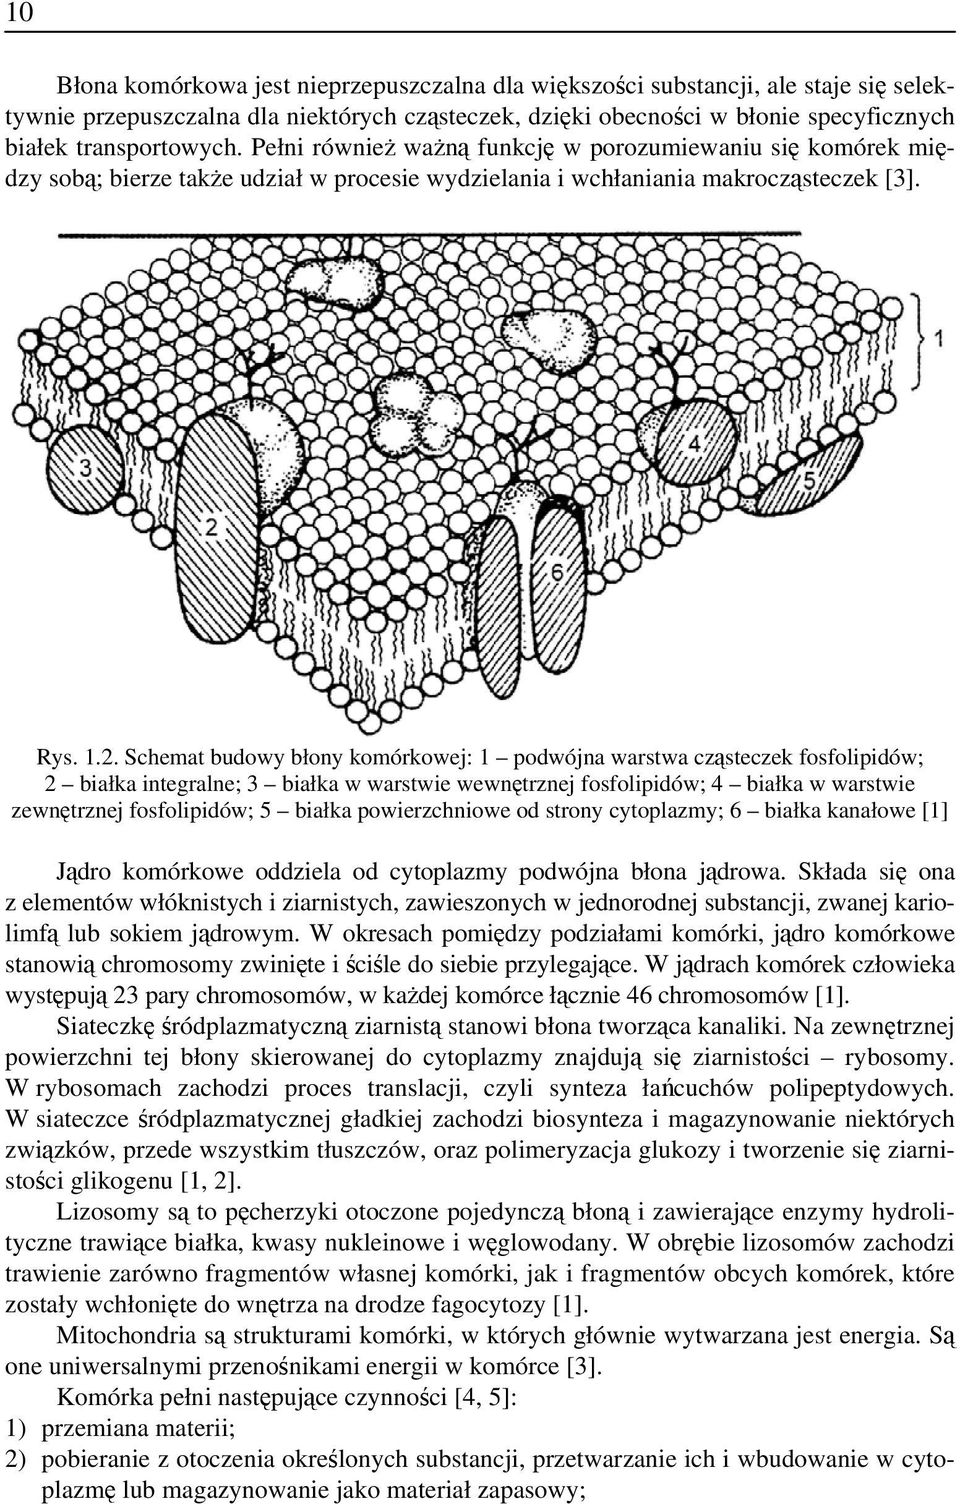 Schemat budowy błony komórkowej: 1 podwójna warstwa cząsteczek fosfolipidów; 2 białka integralne; 3 białka w warstwie wewnętrznej fosfolipidów; 4 białka w warstwie zewnętrznej fosfolipidów; 5 białka